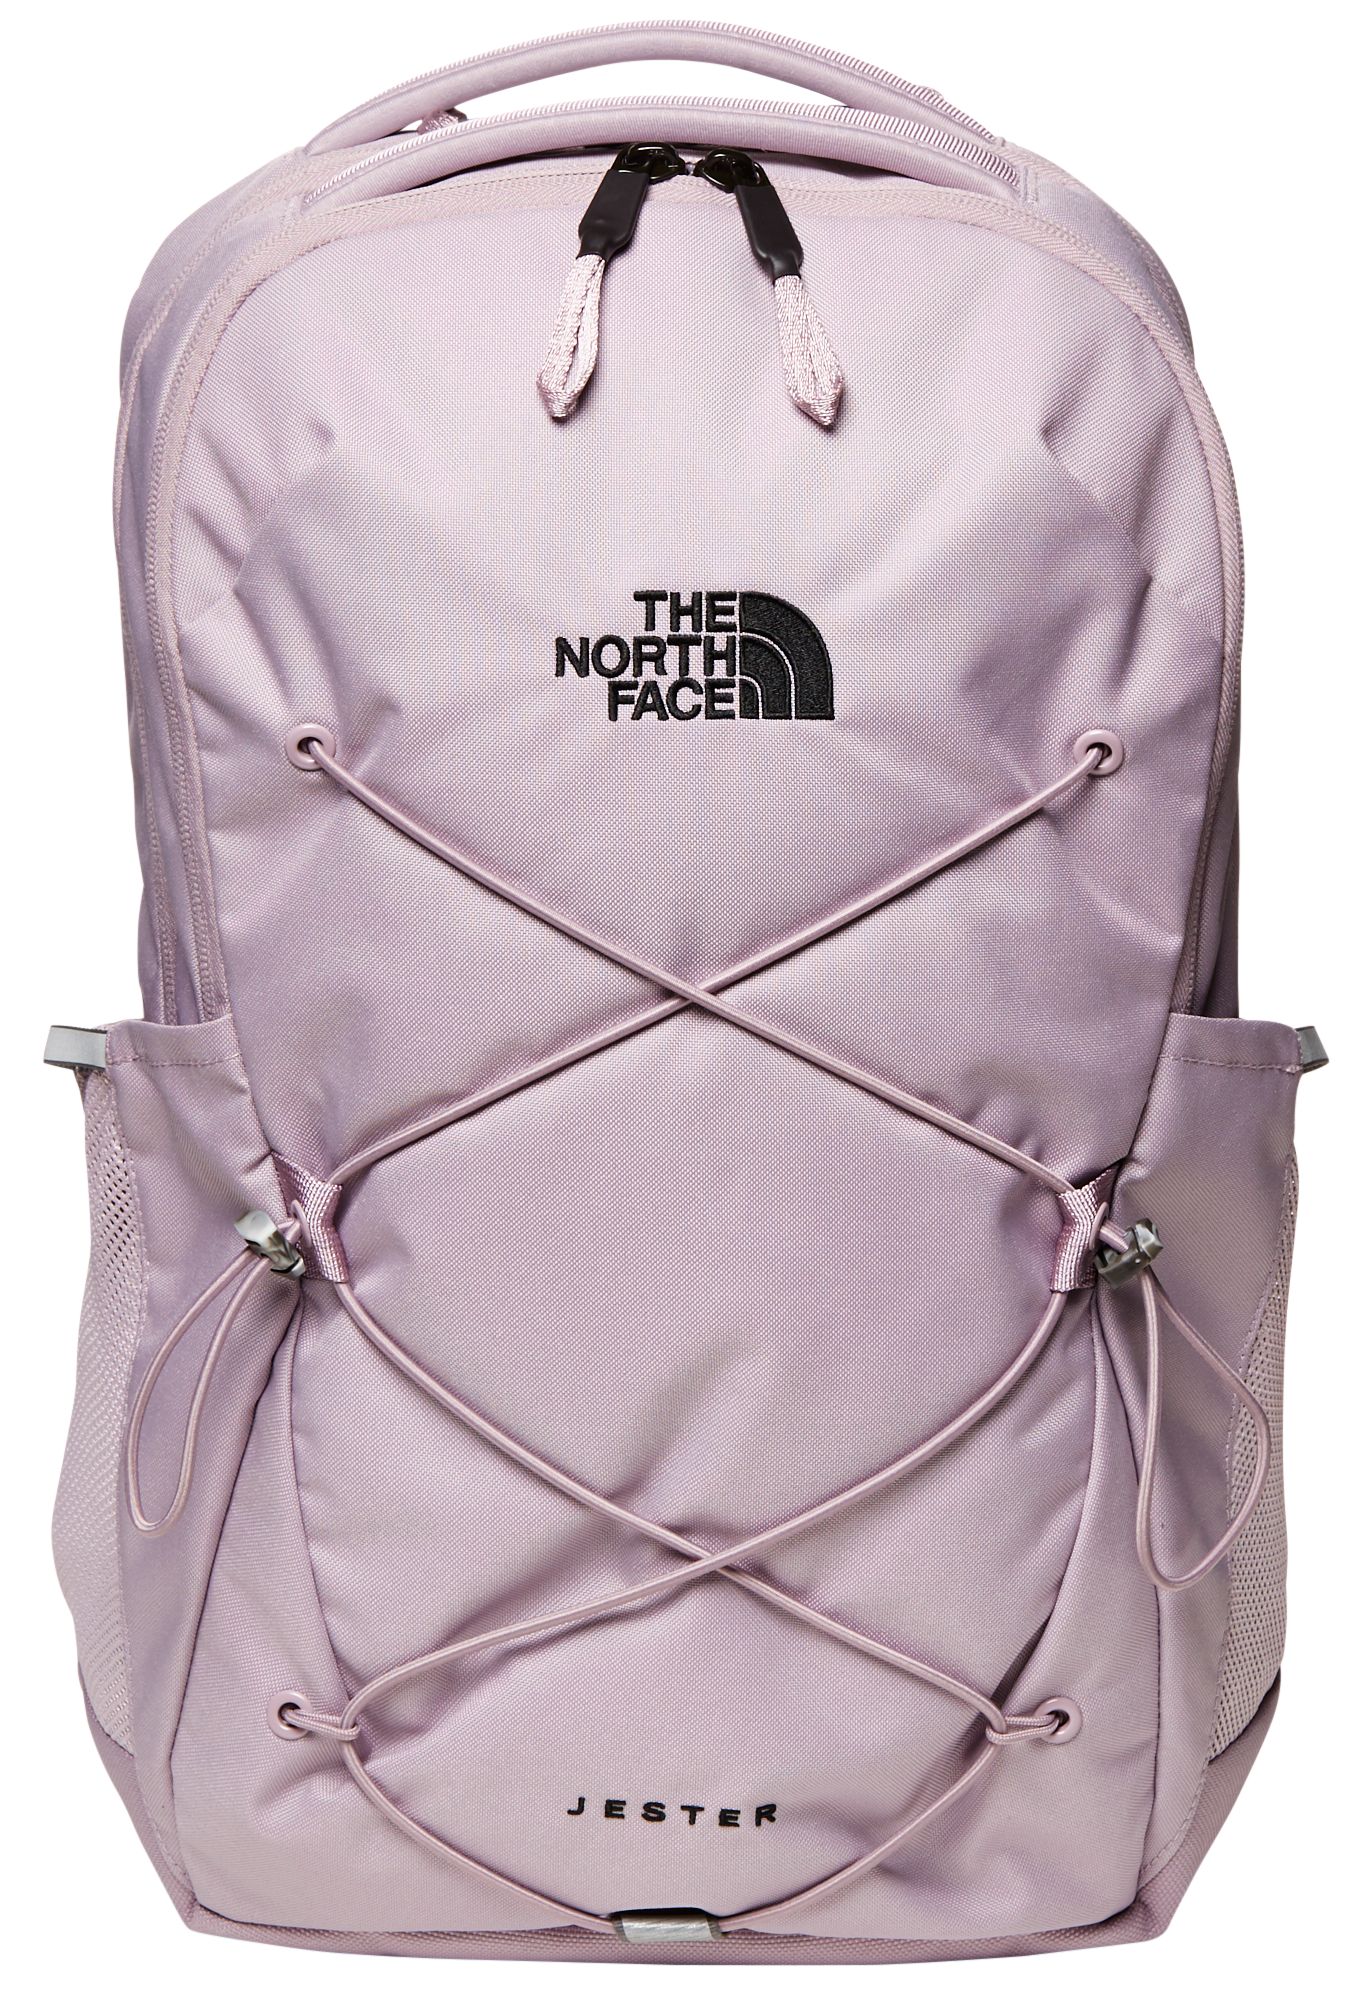 jester women's backpack